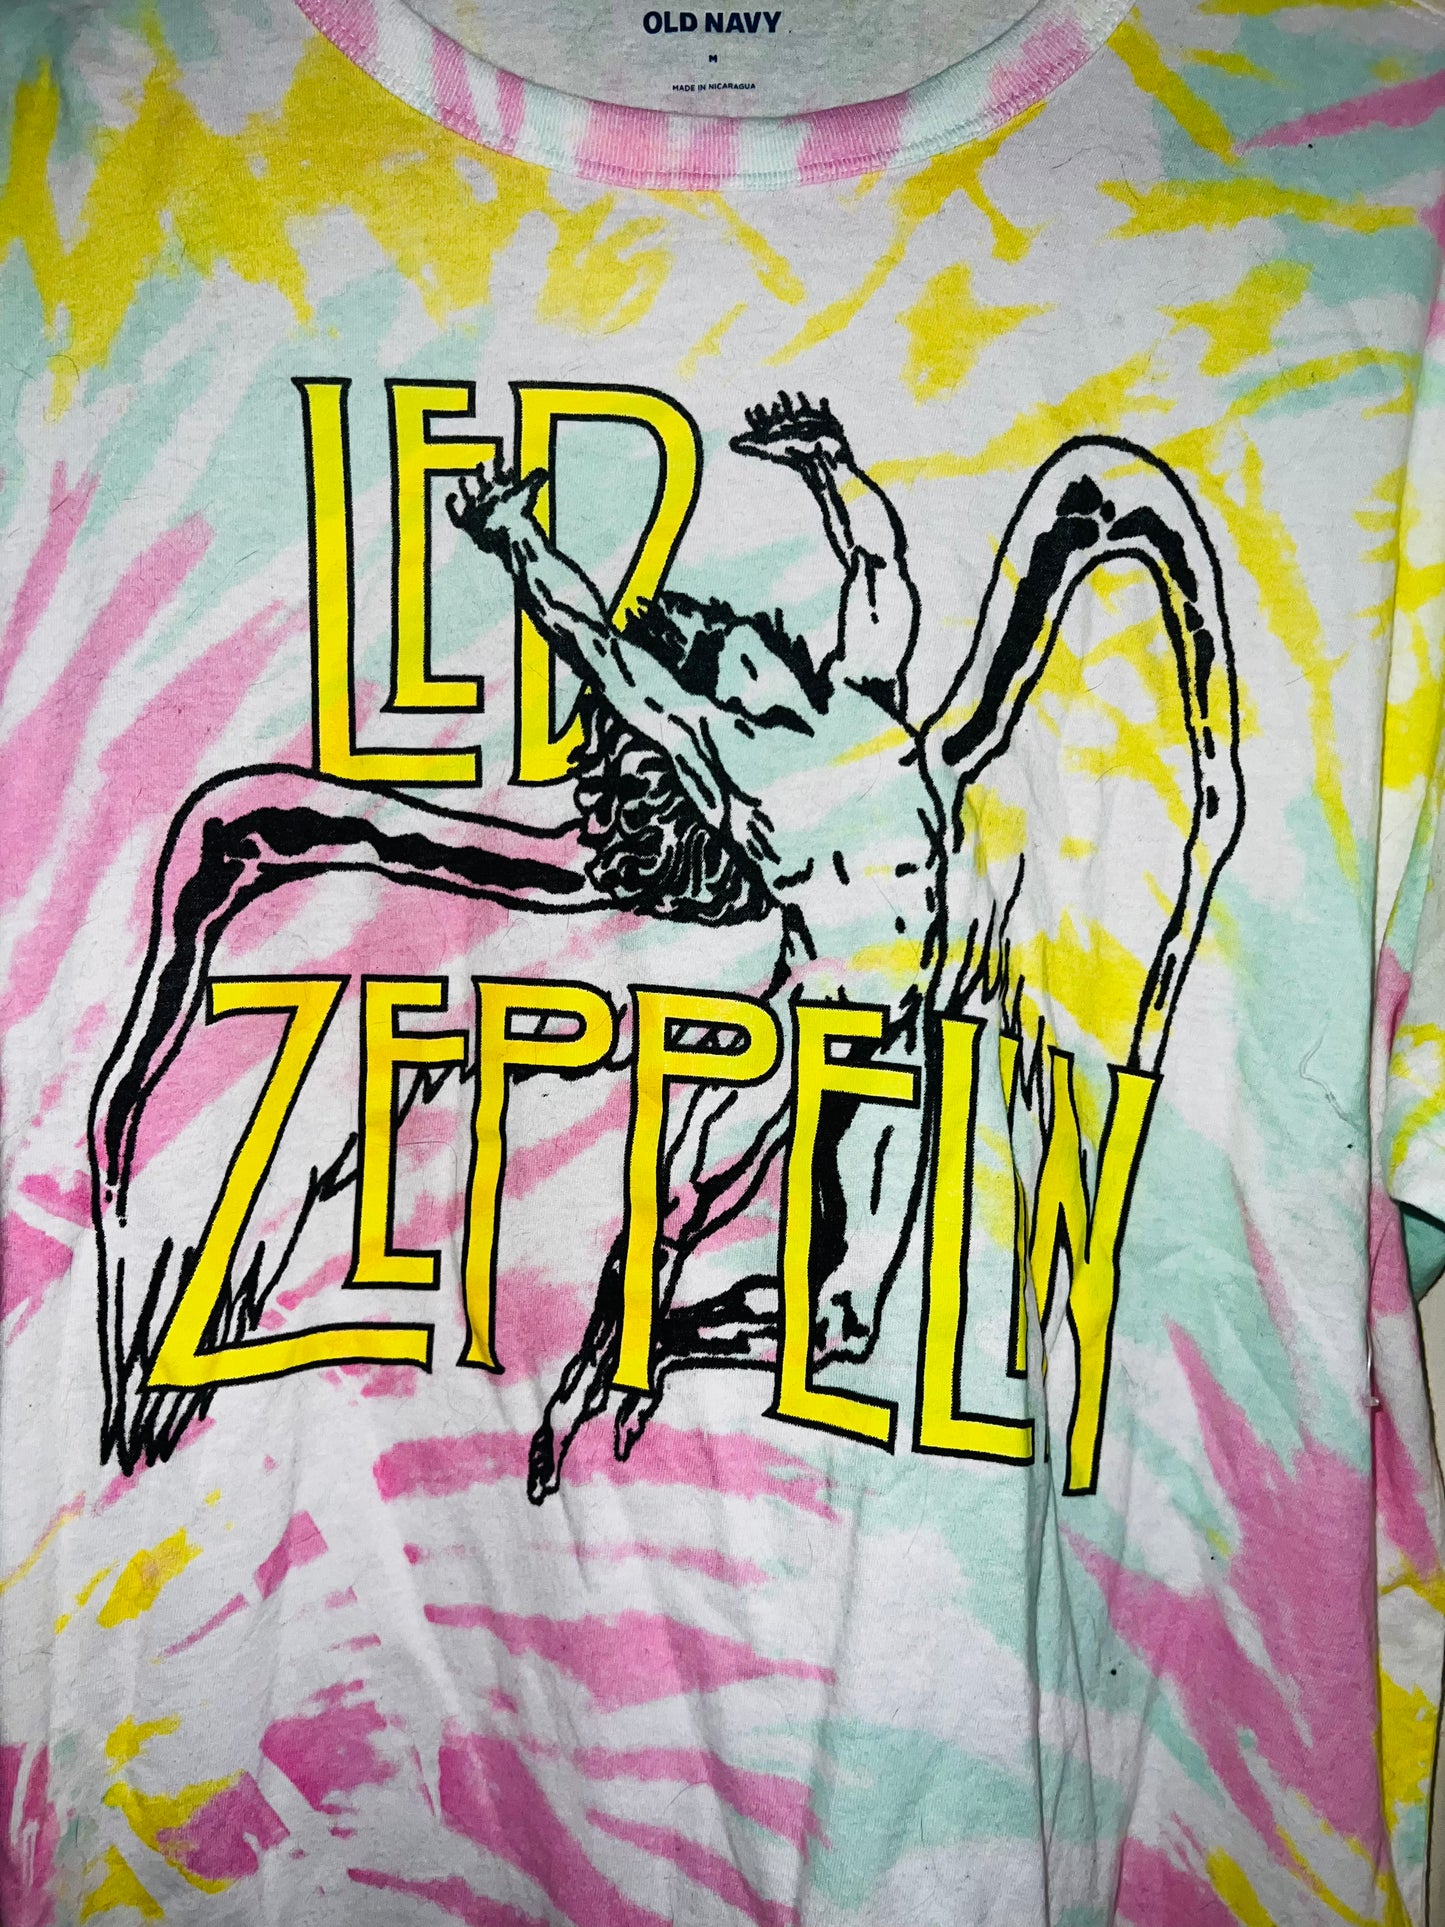 Led Zeppelin Tie Dye Distressed Tee